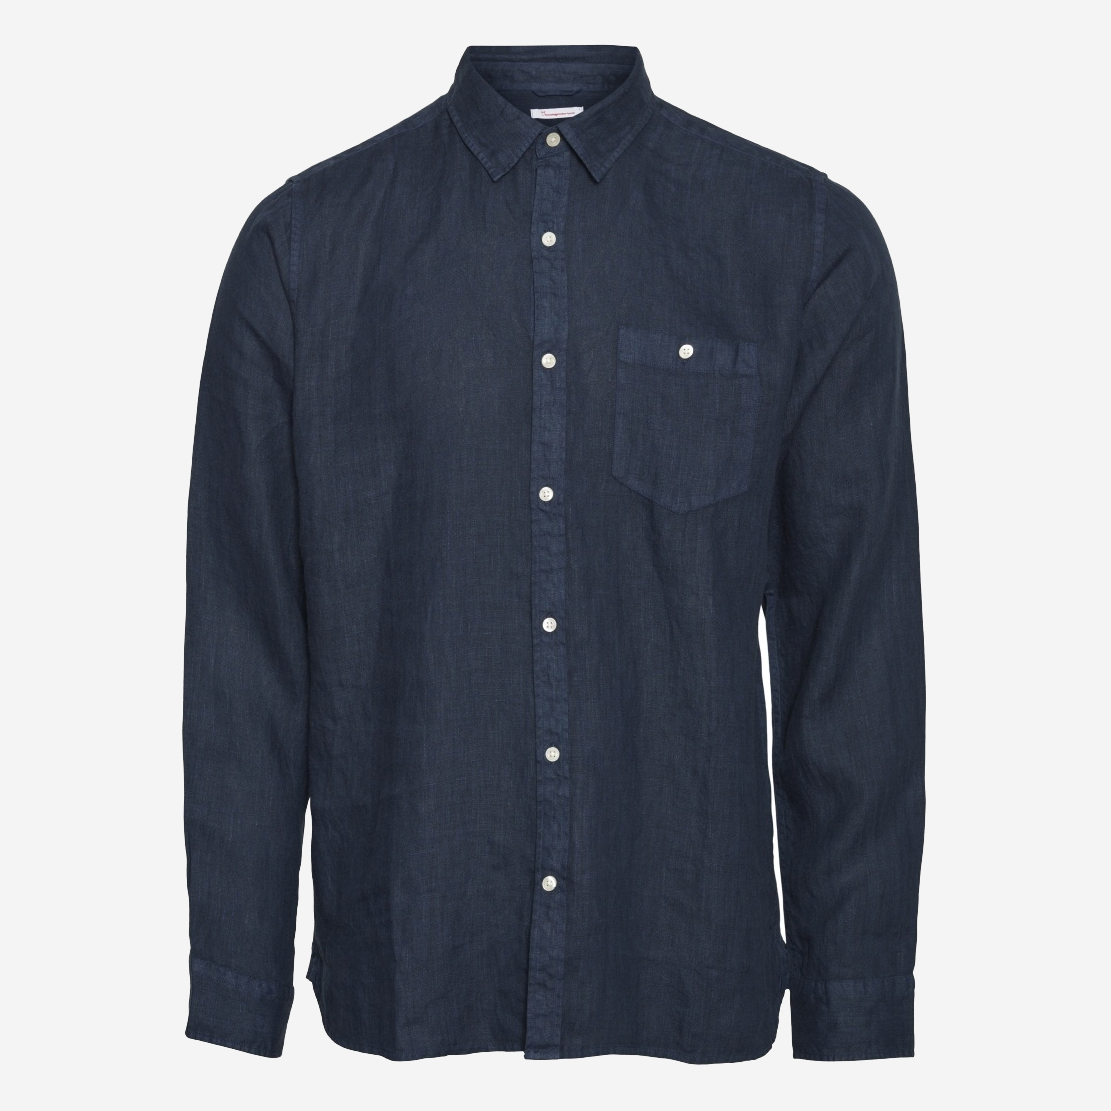 Marinblå linneskjorta från Knowledge Cotton Apparel